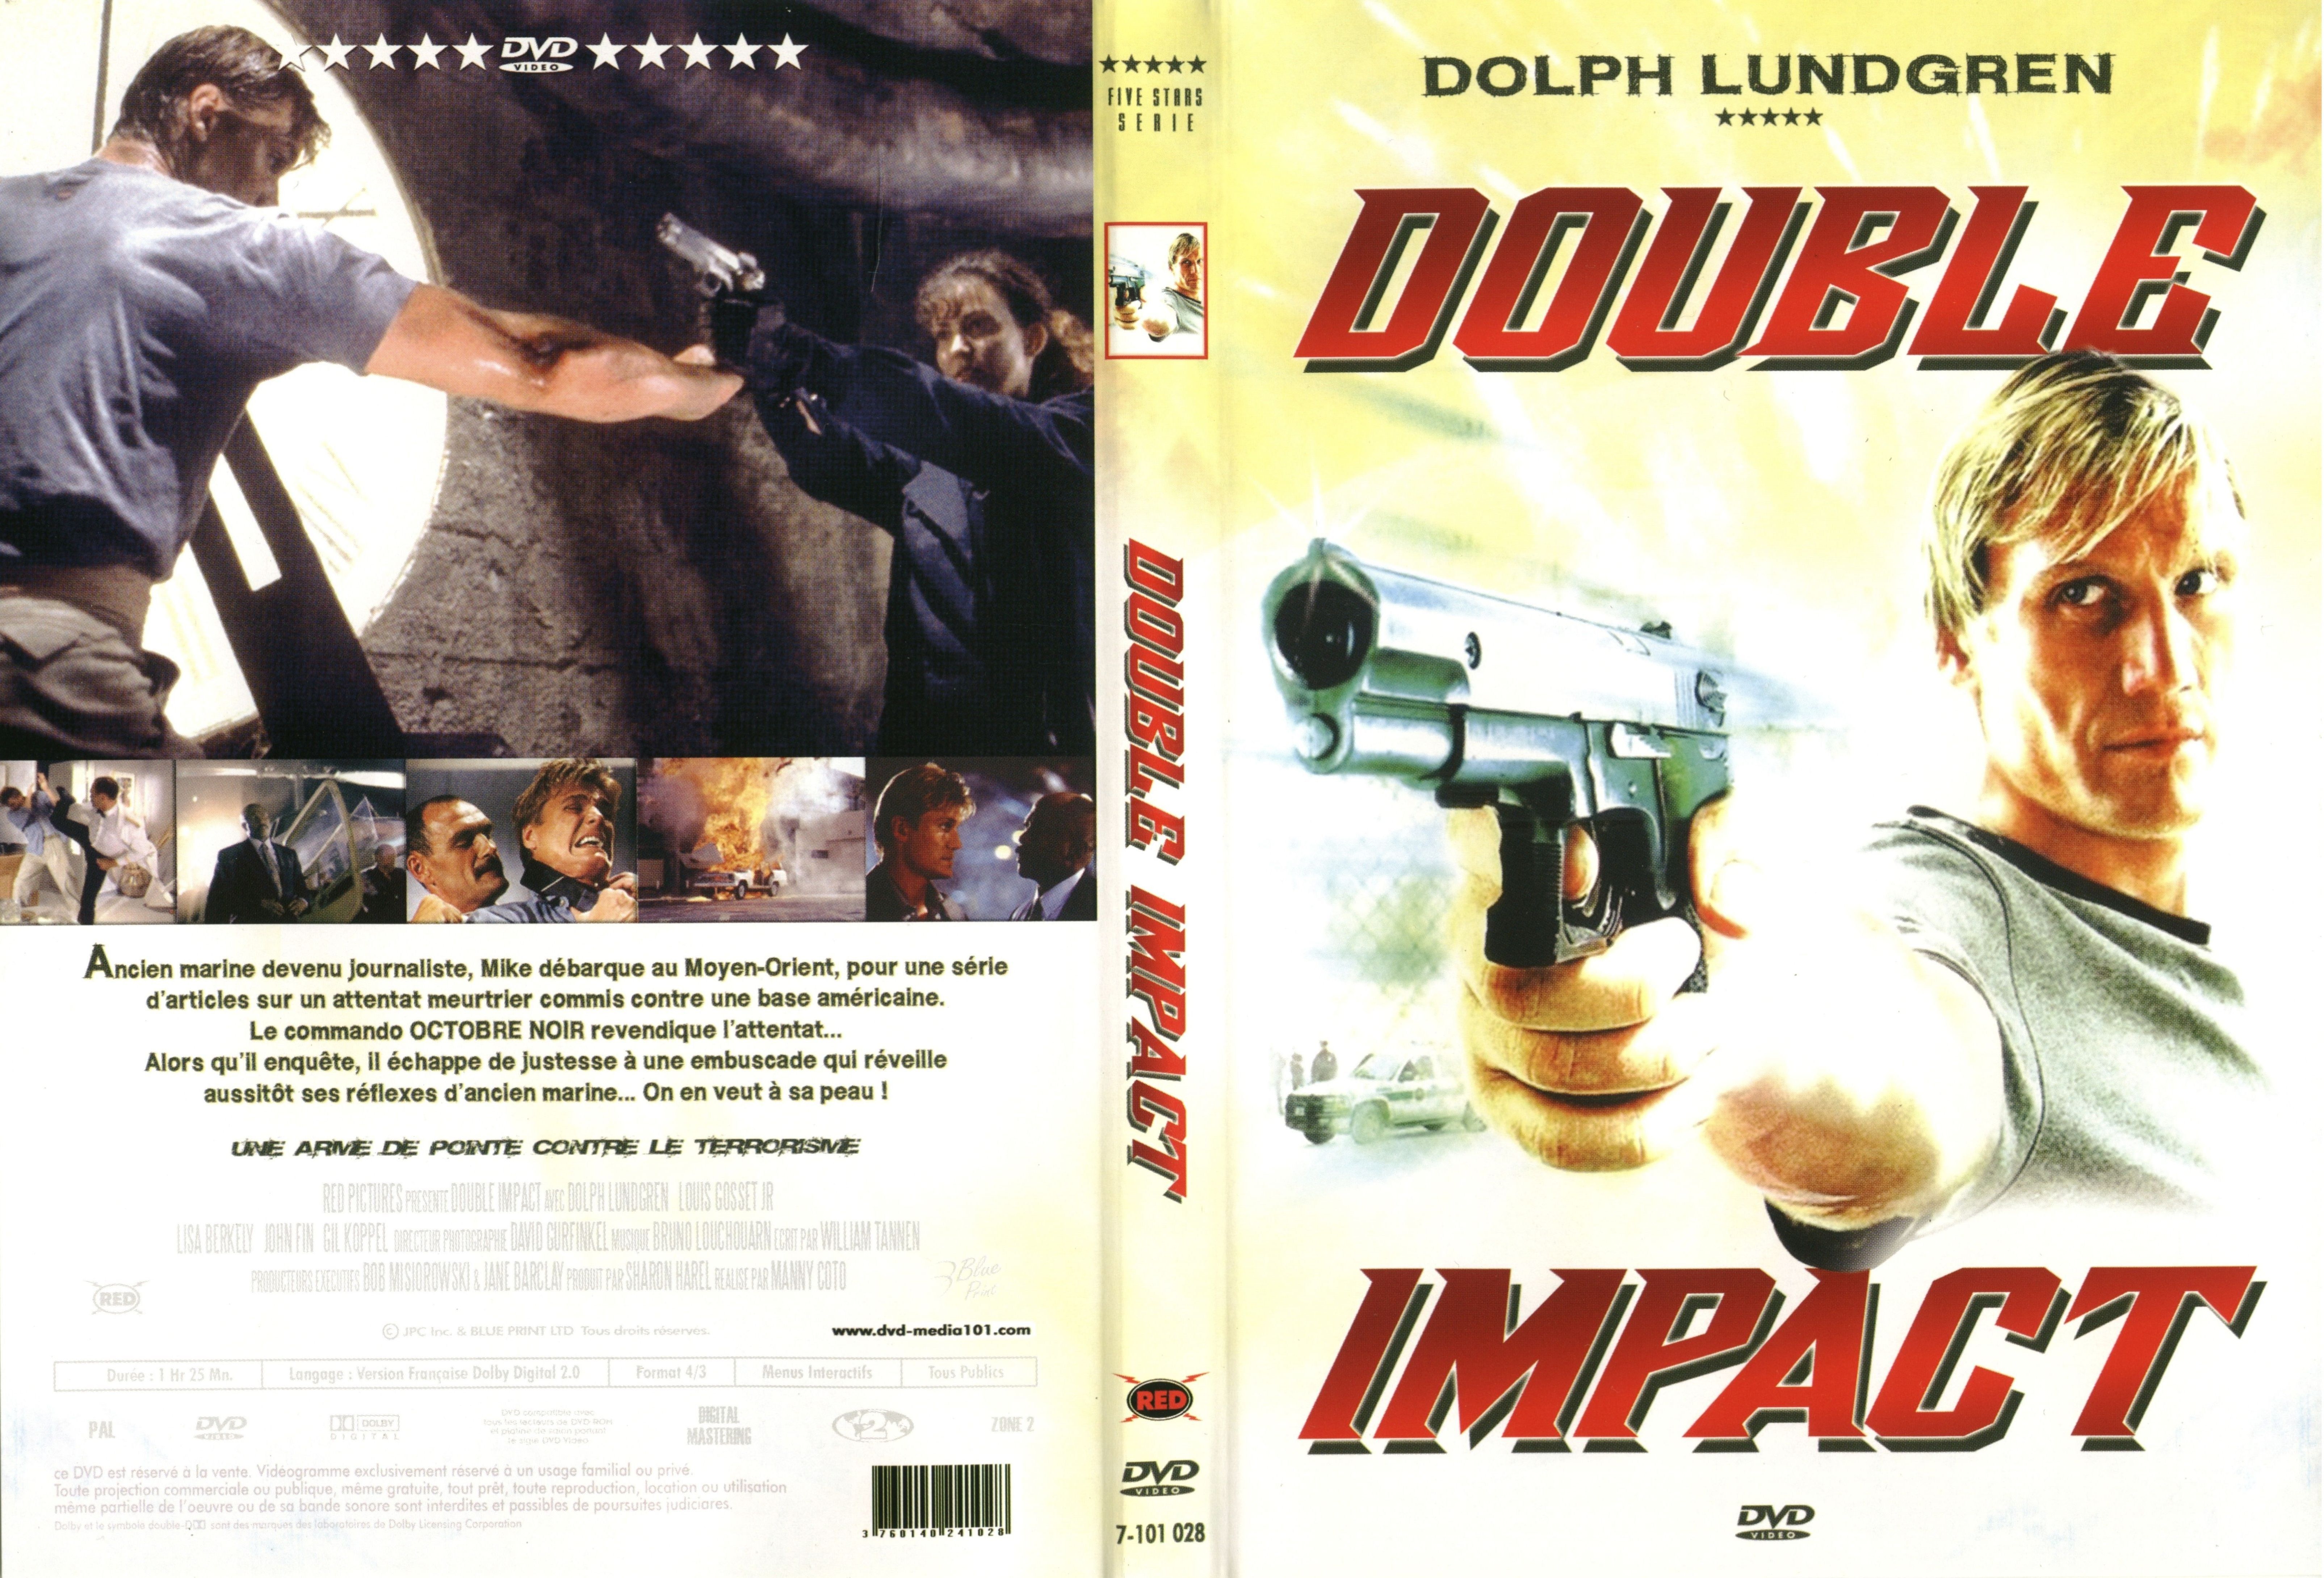 Jaquette DVD Double impact (Dolph Lundgren)